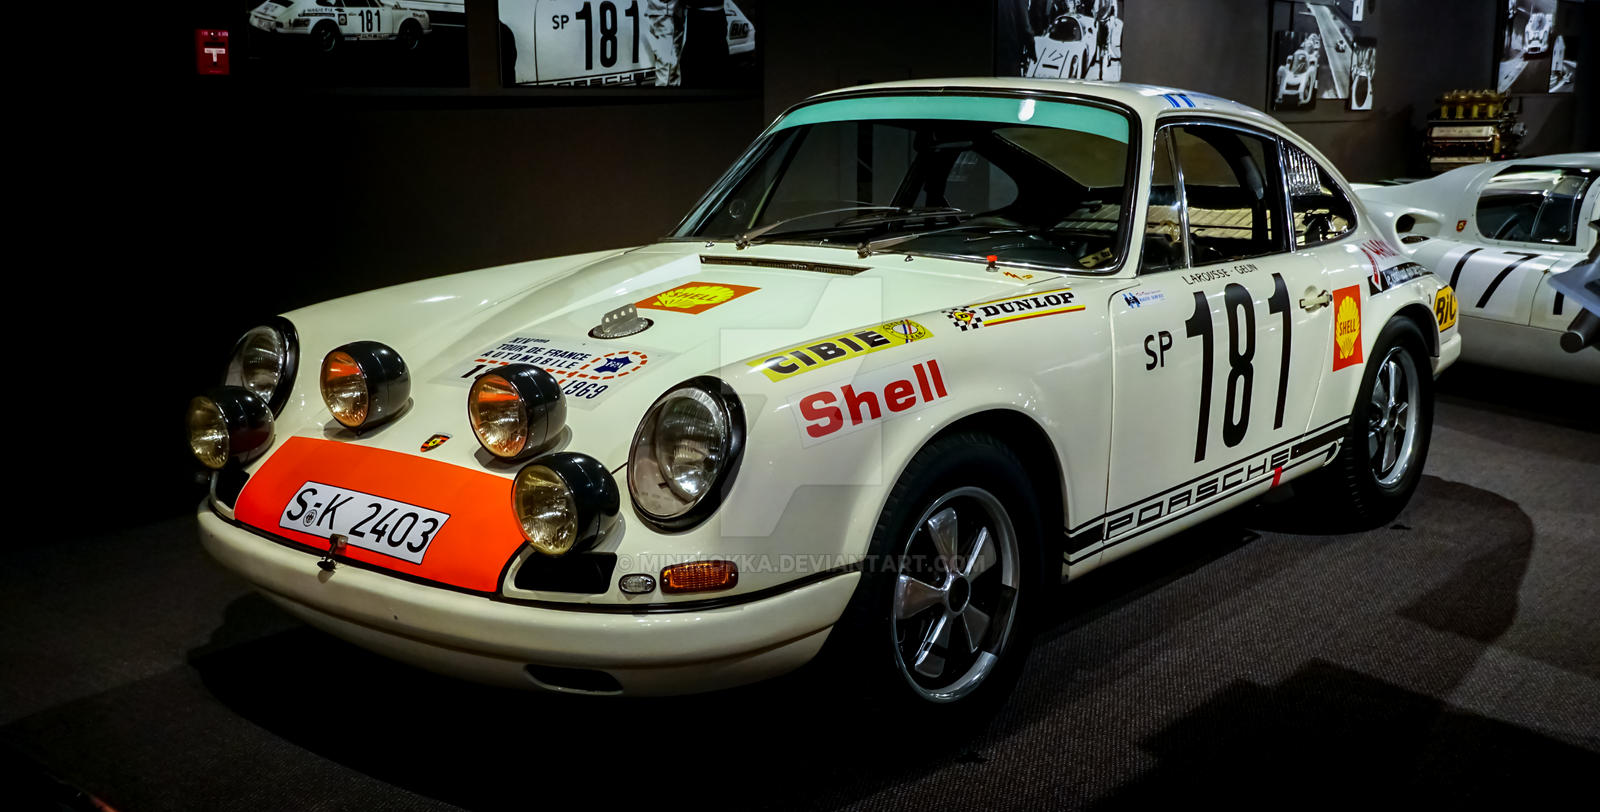 1967 Porsche by MiniMokka on DeviantArt